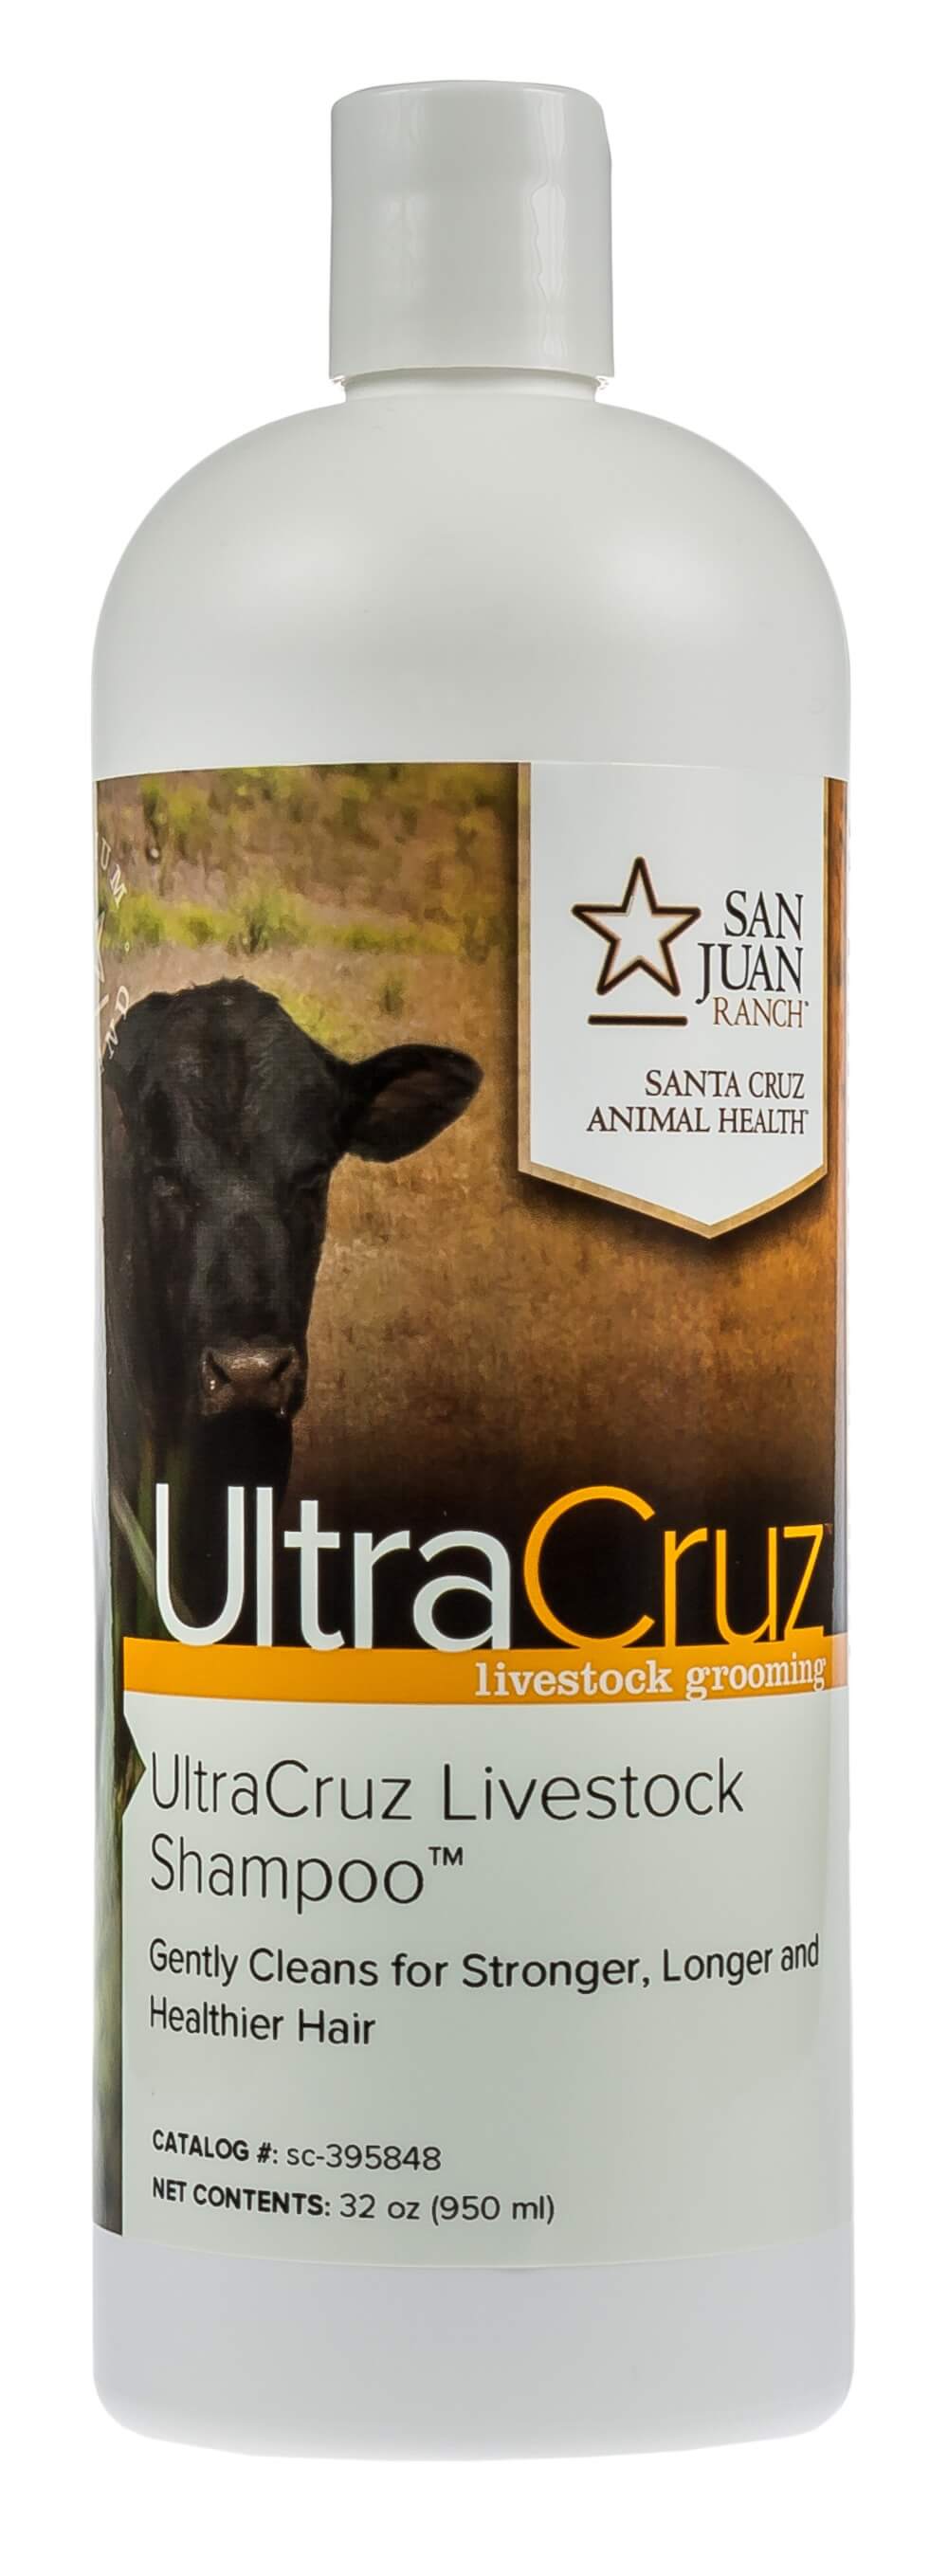 Ultracruz Livestock Shampoo